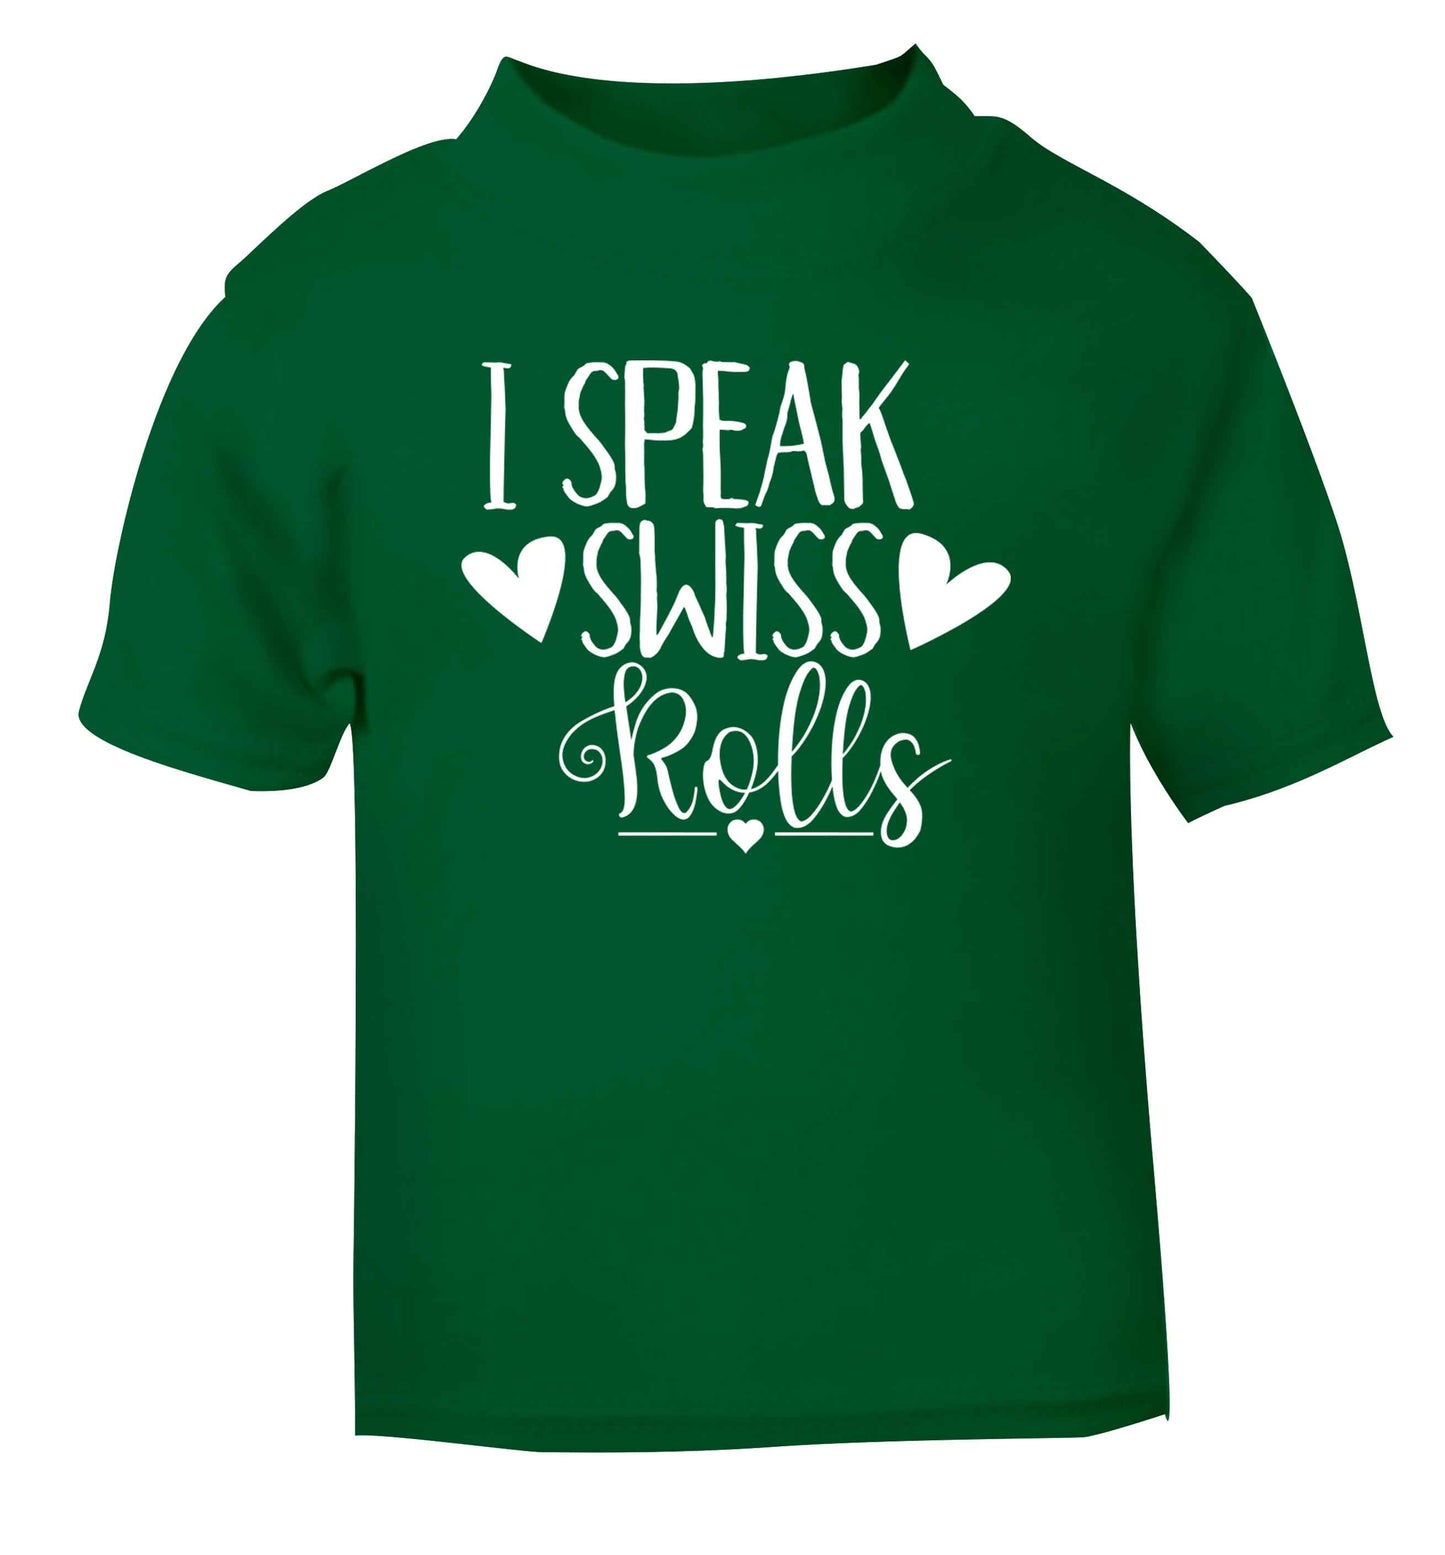 I speak swiss..rolls green Baby Toddler Tshirt 2 Years